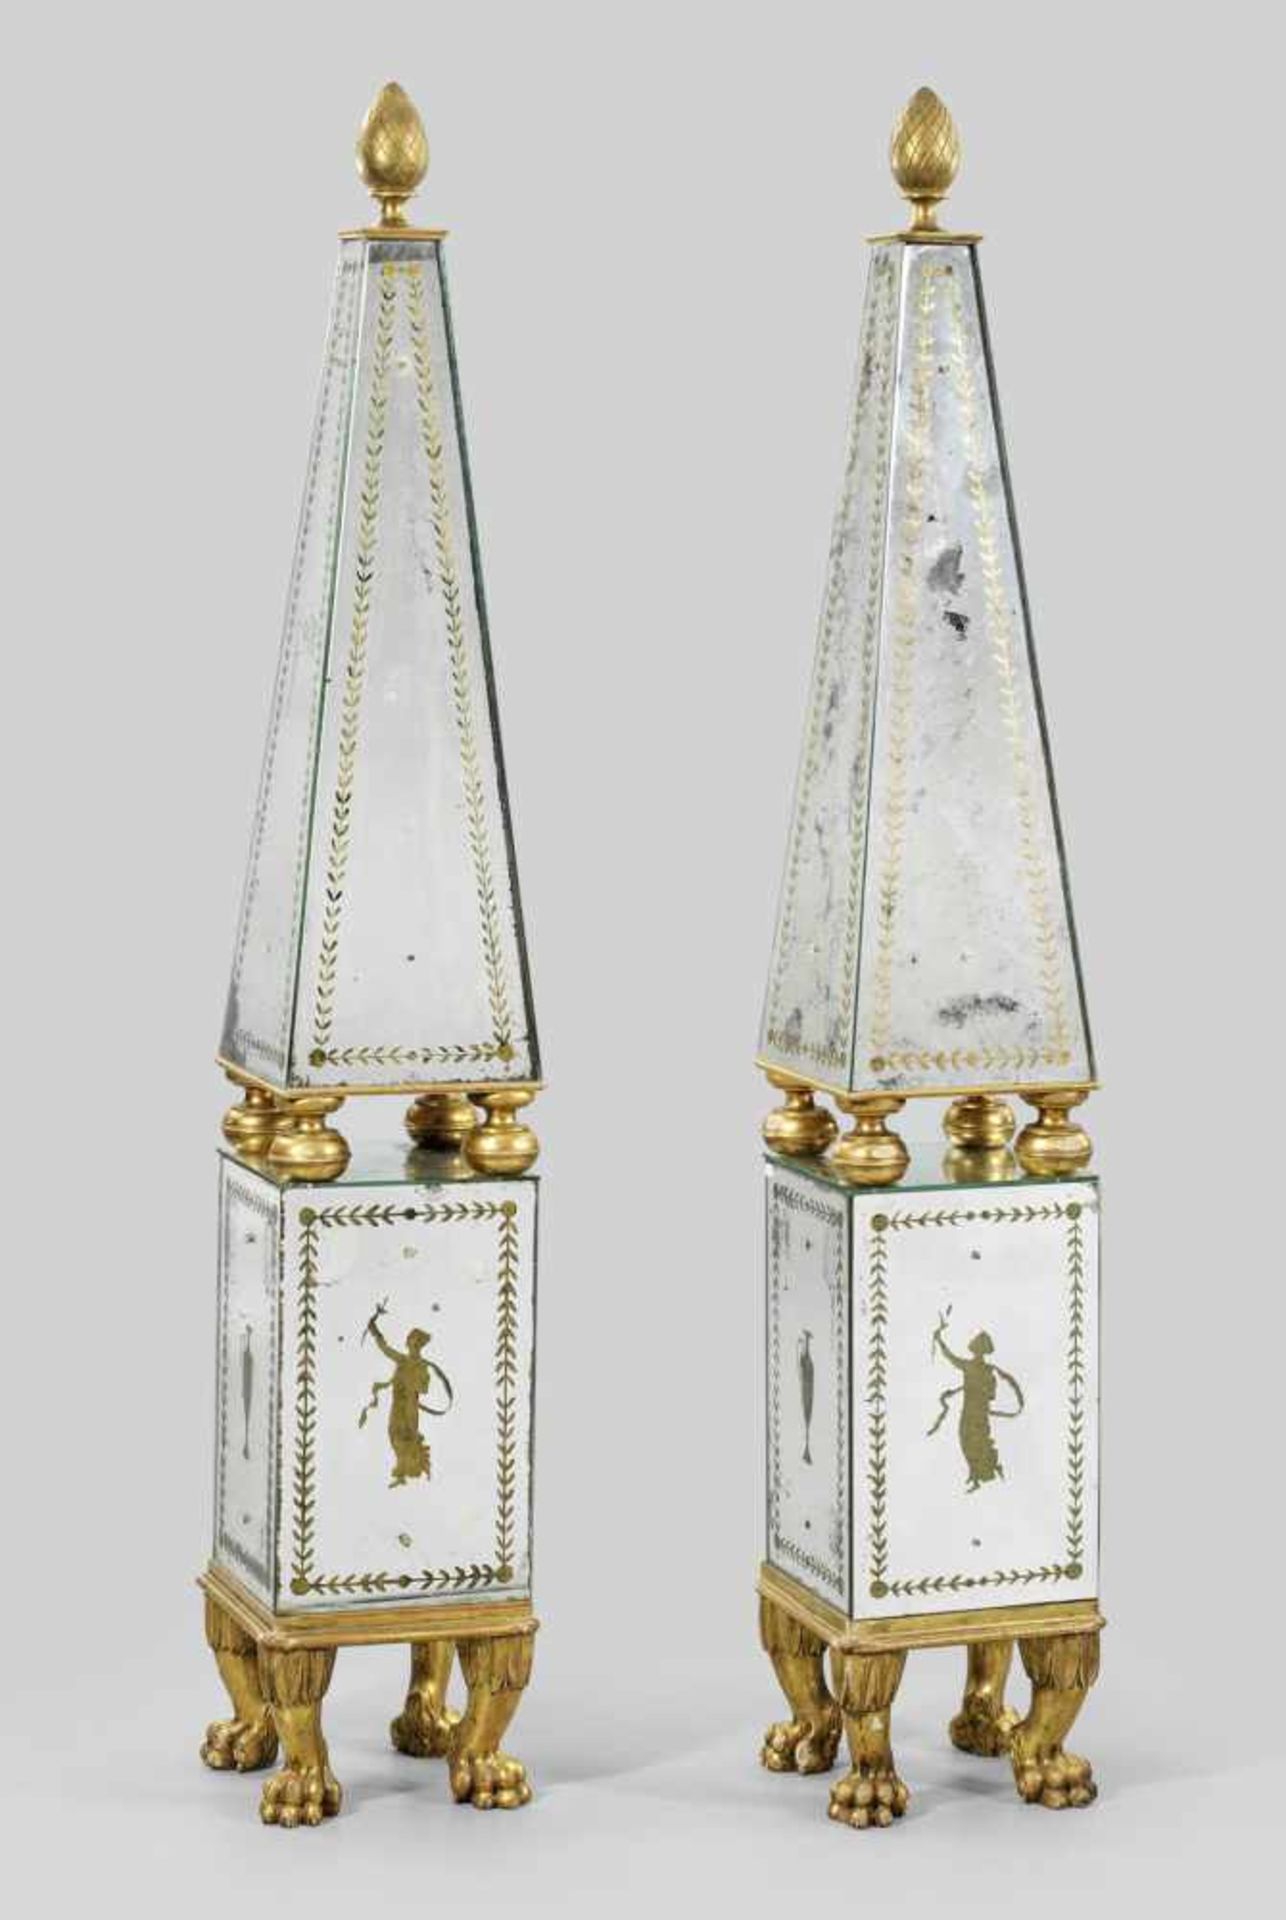 Paar imposante Muranoglas-Spiegel-ObeliskenSpiegelglas mit Goldmalerei sowie Holz, geschnitzt,